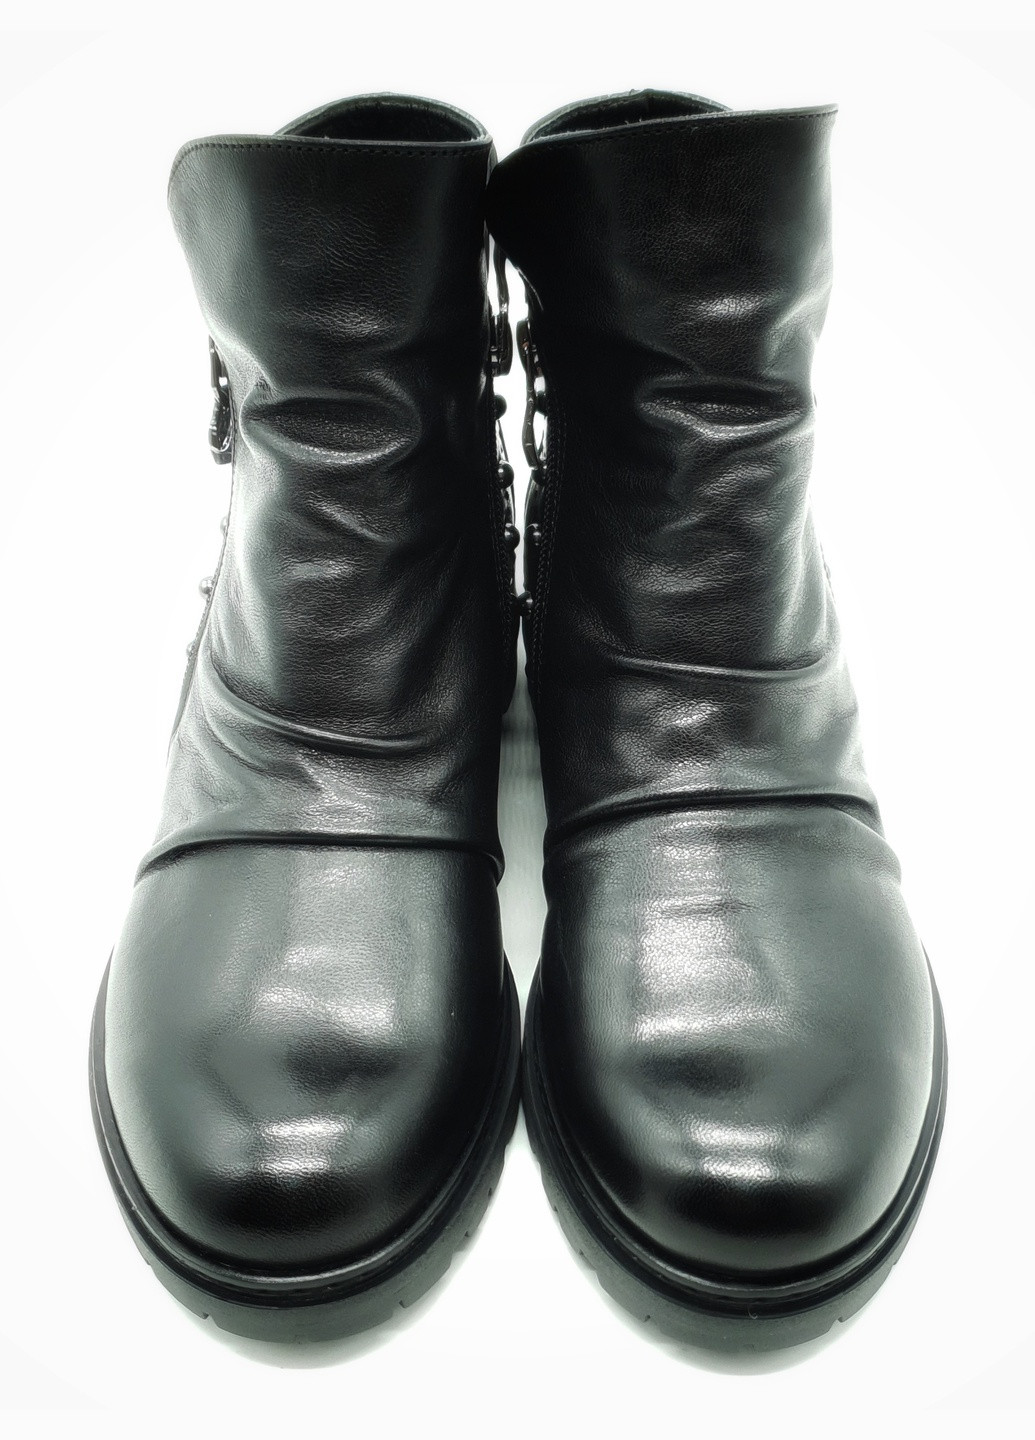 Осенние женские ботинки зимние черные кожаные p-19-1 24 см (р) patterns